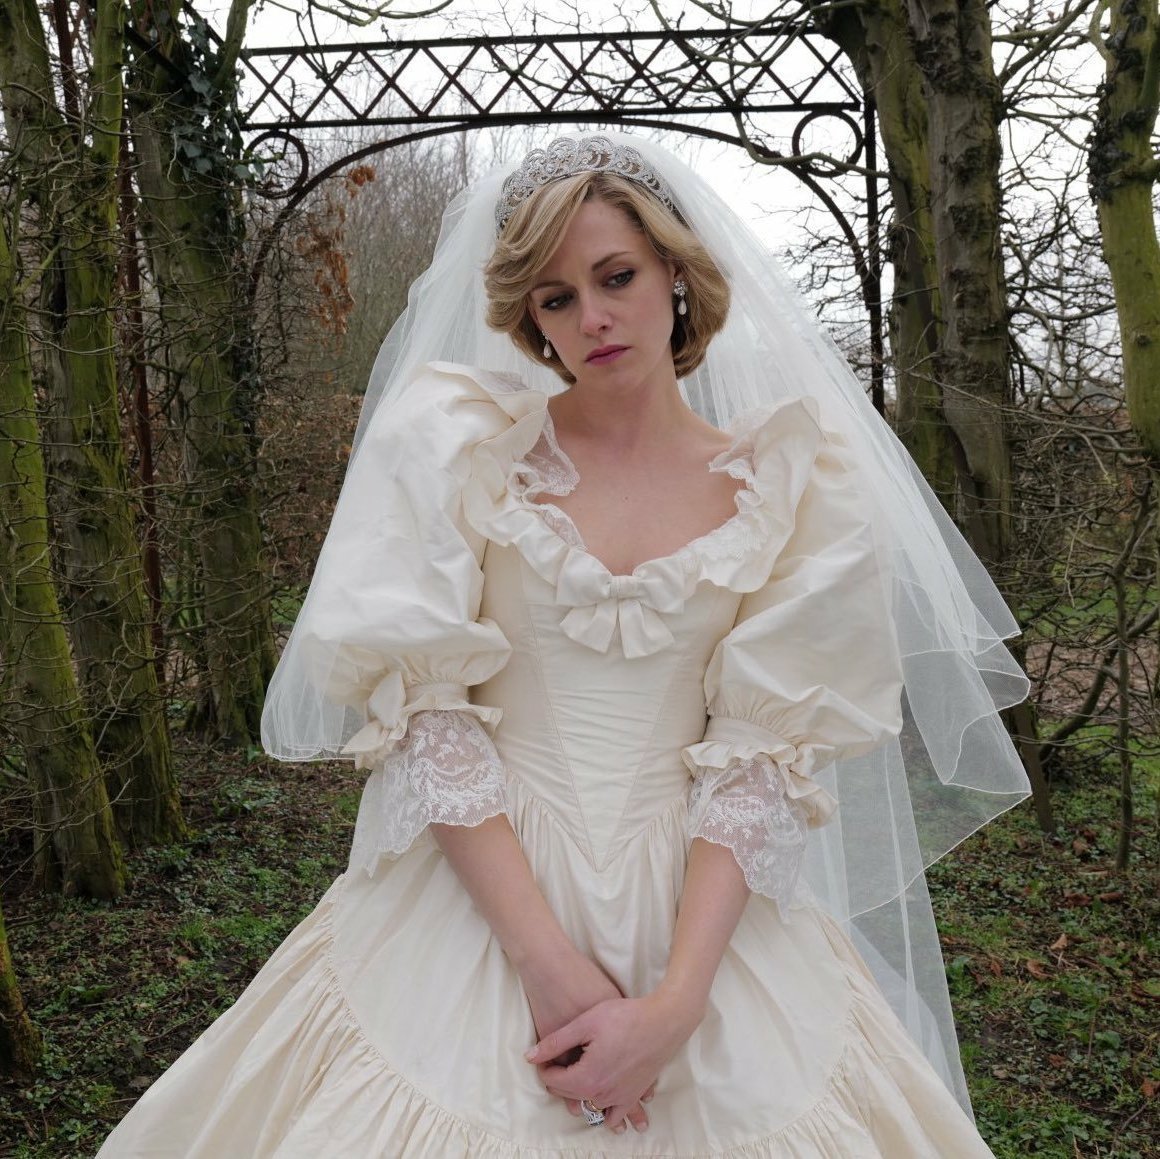 A Vogue elegeu a performance de Kristen Stewart em ‘Spencer’ como a melhor interpretação da princesa Diana até hoje.